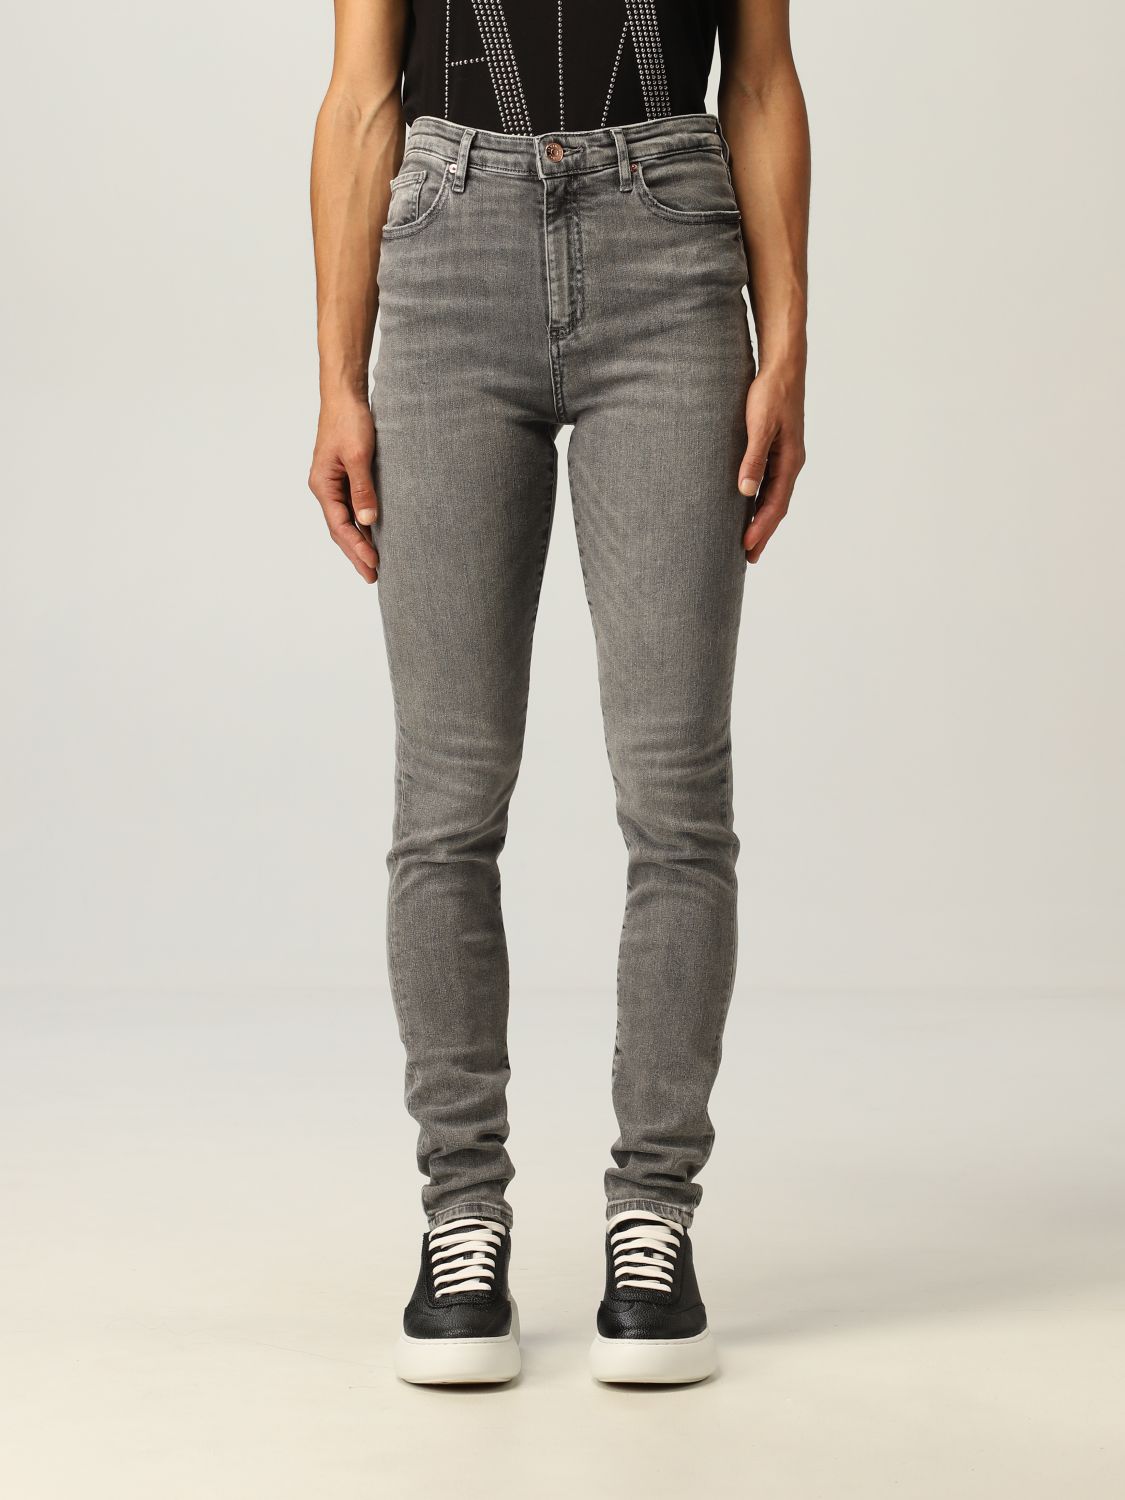 ARMANI EXCHANGE: Jeans women | Jeans Armani Exchange Women Grey | Jeans ...